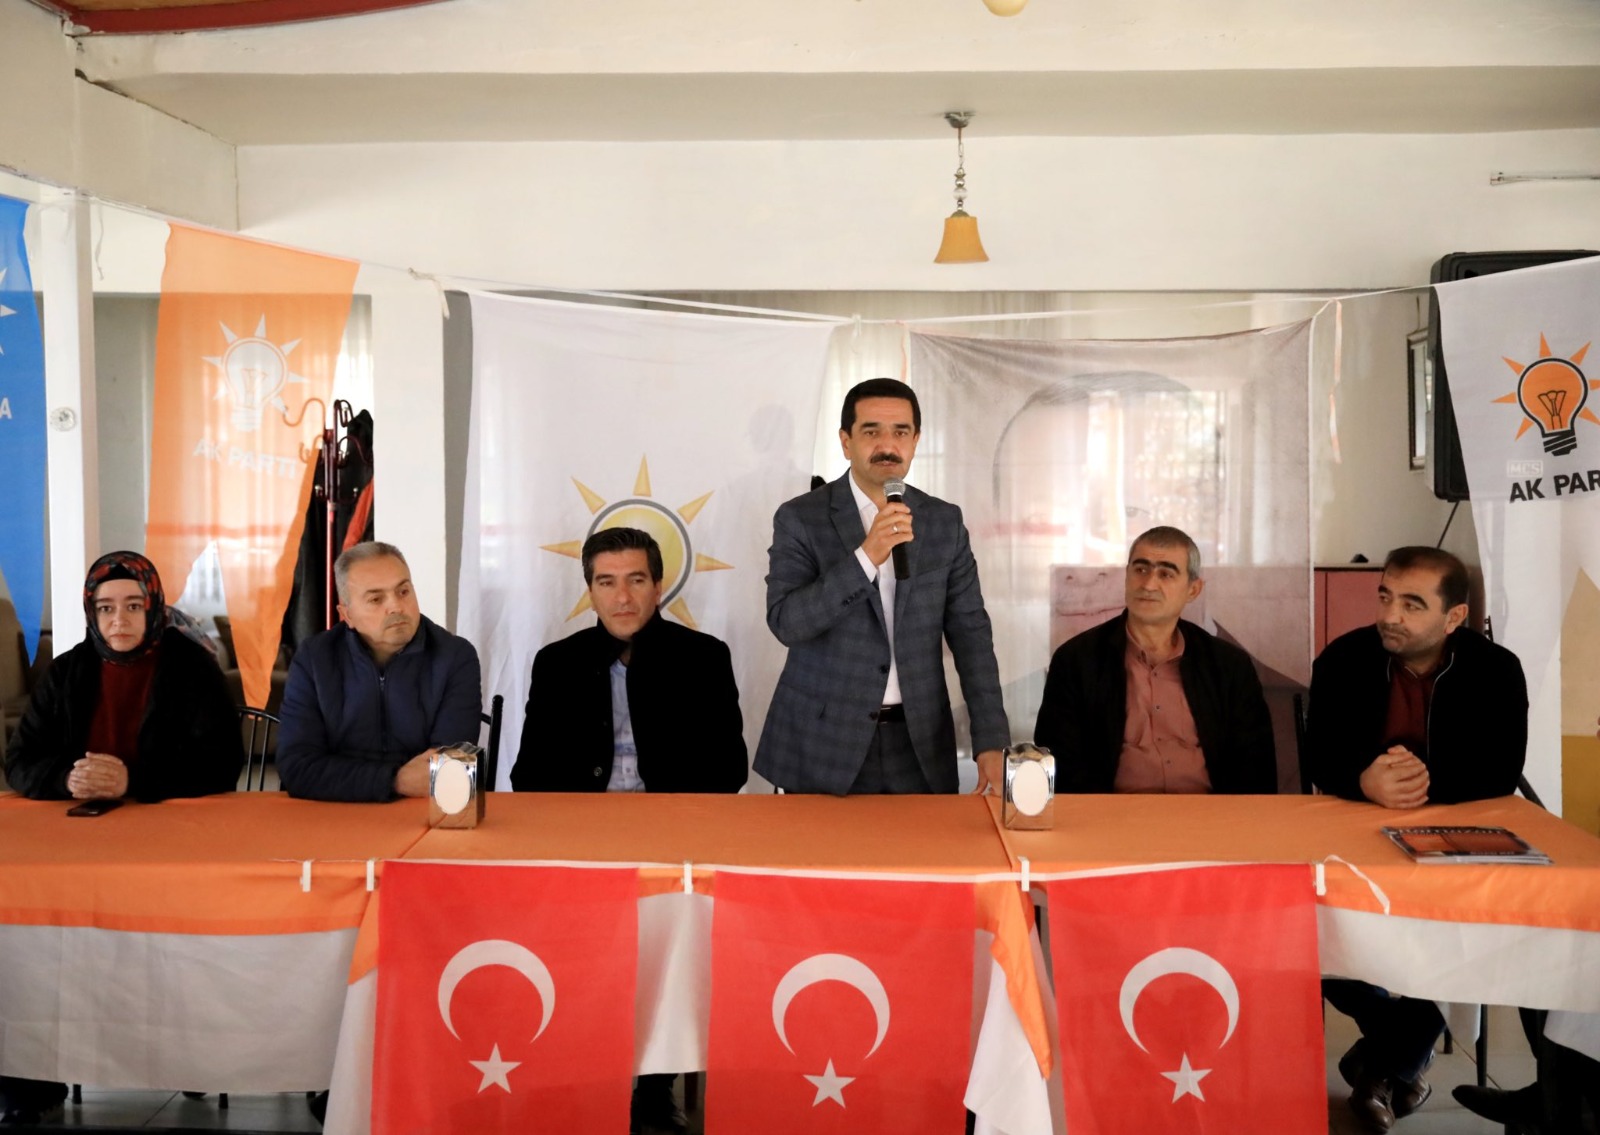 AK Partili Taşkın: “ Bin yıl dediler 3 yıl sürdü”